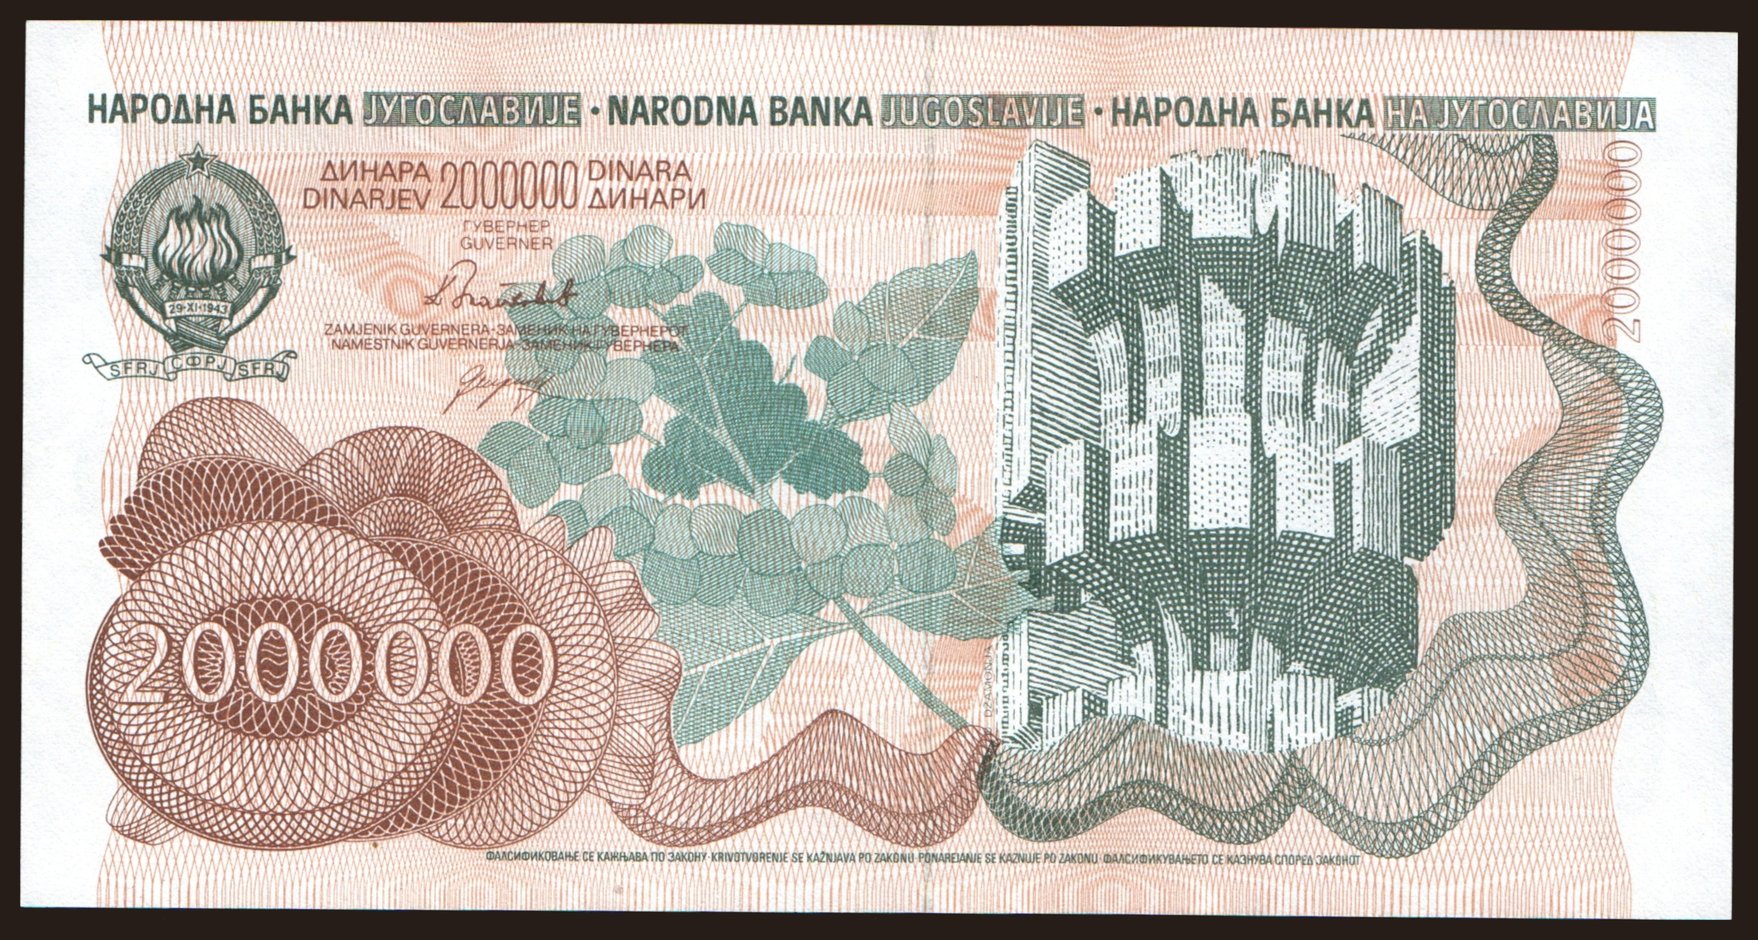 2.000.000 dinara, 1989